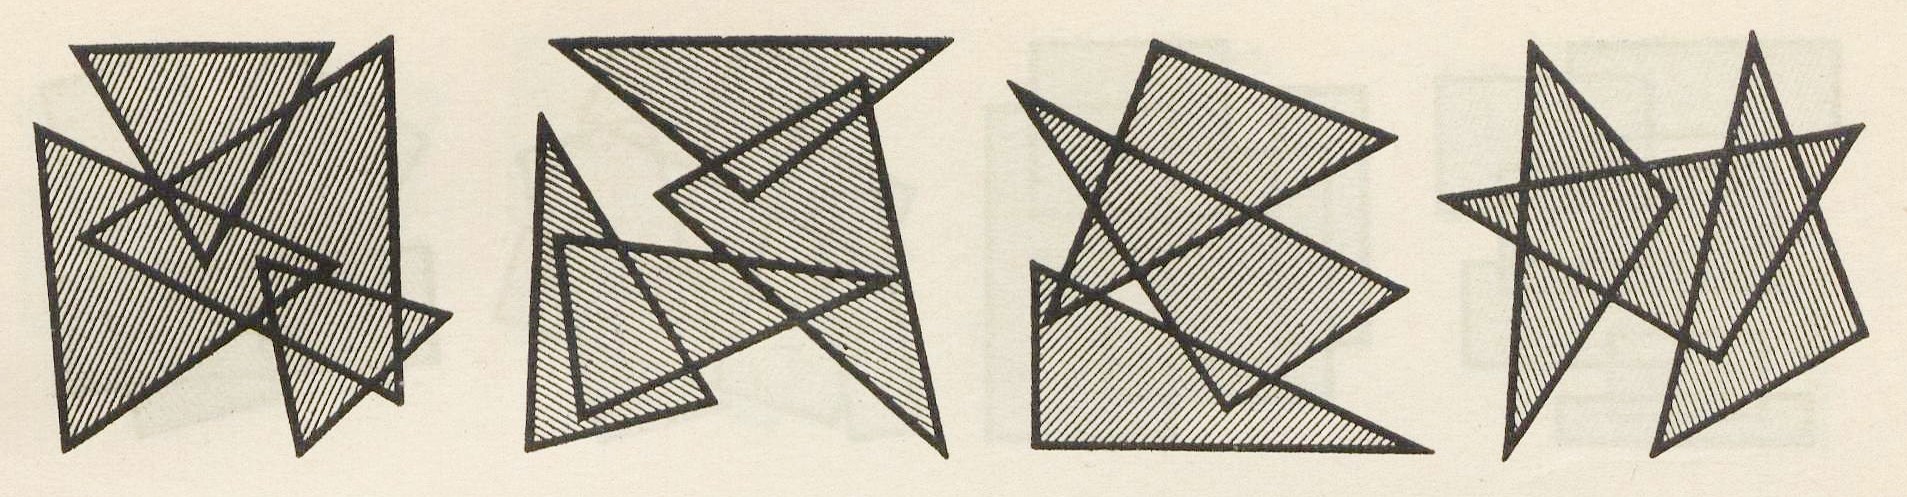 6, 7, 8, 9 Плоскостные композиции сочетания треугольников: а) разносторонних, b) прямоугольных, с) равнобедренных и d) равносторонних